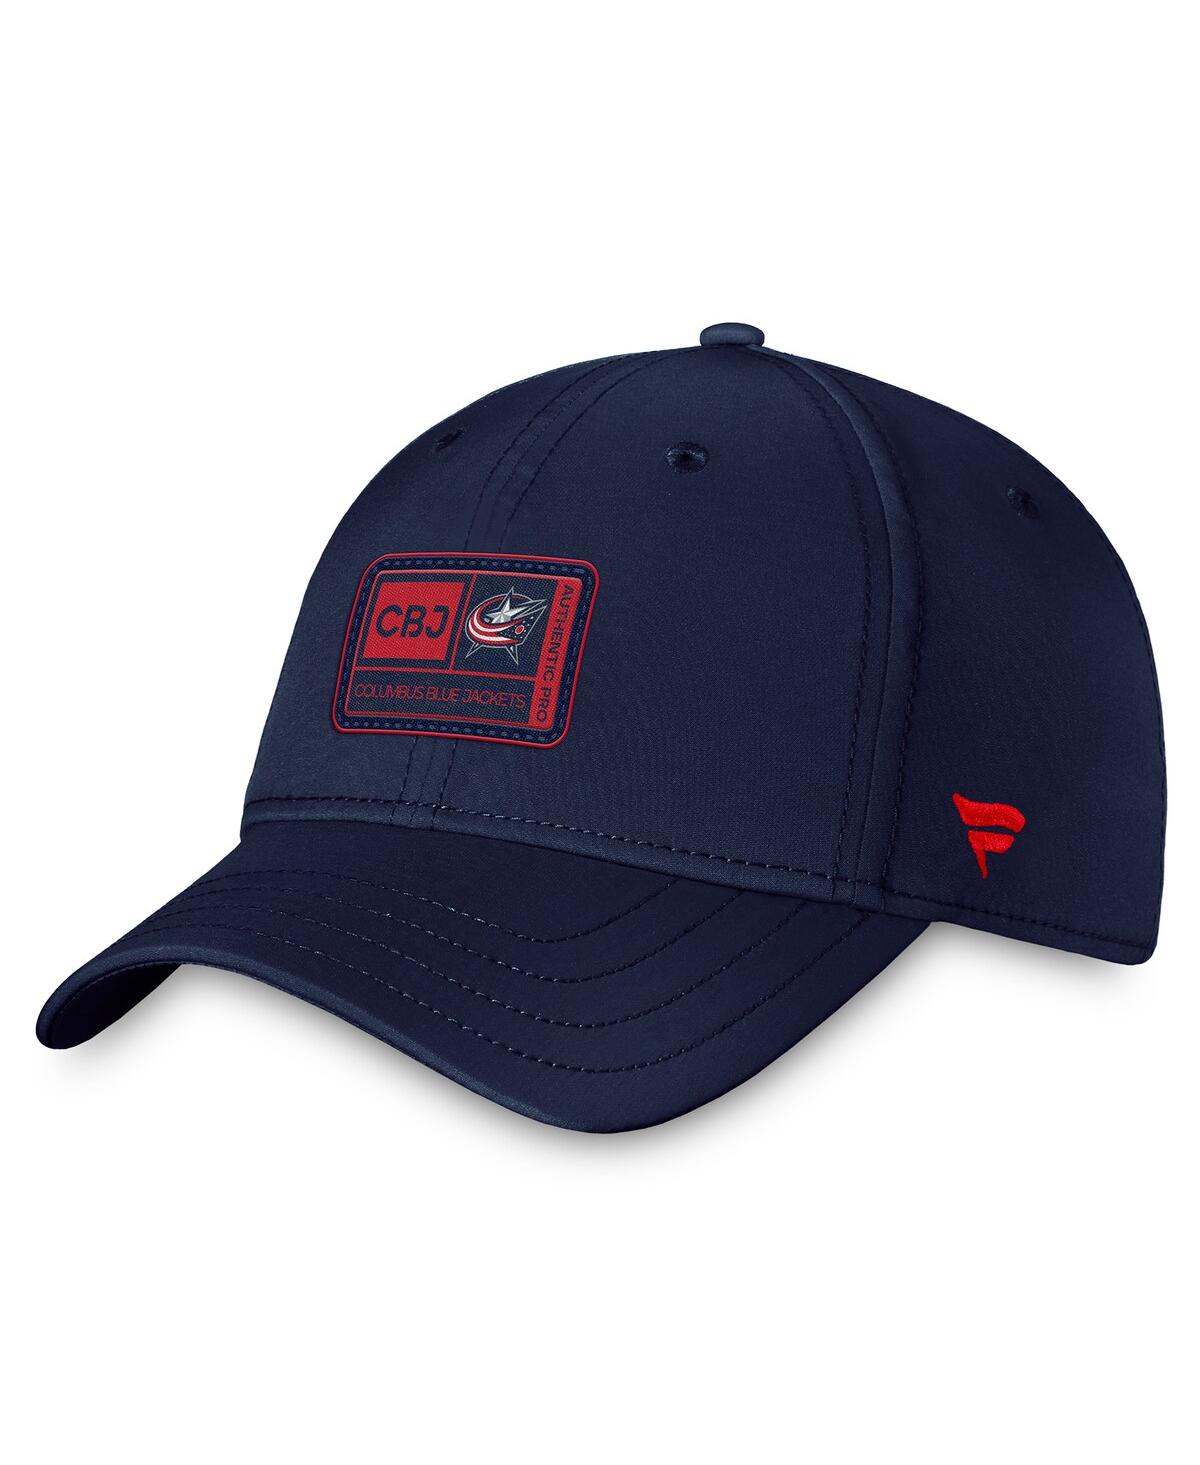 Fanatics Men's  Navy Columbus Blue Jackets Authentic Pro Training Camp Flex Hat